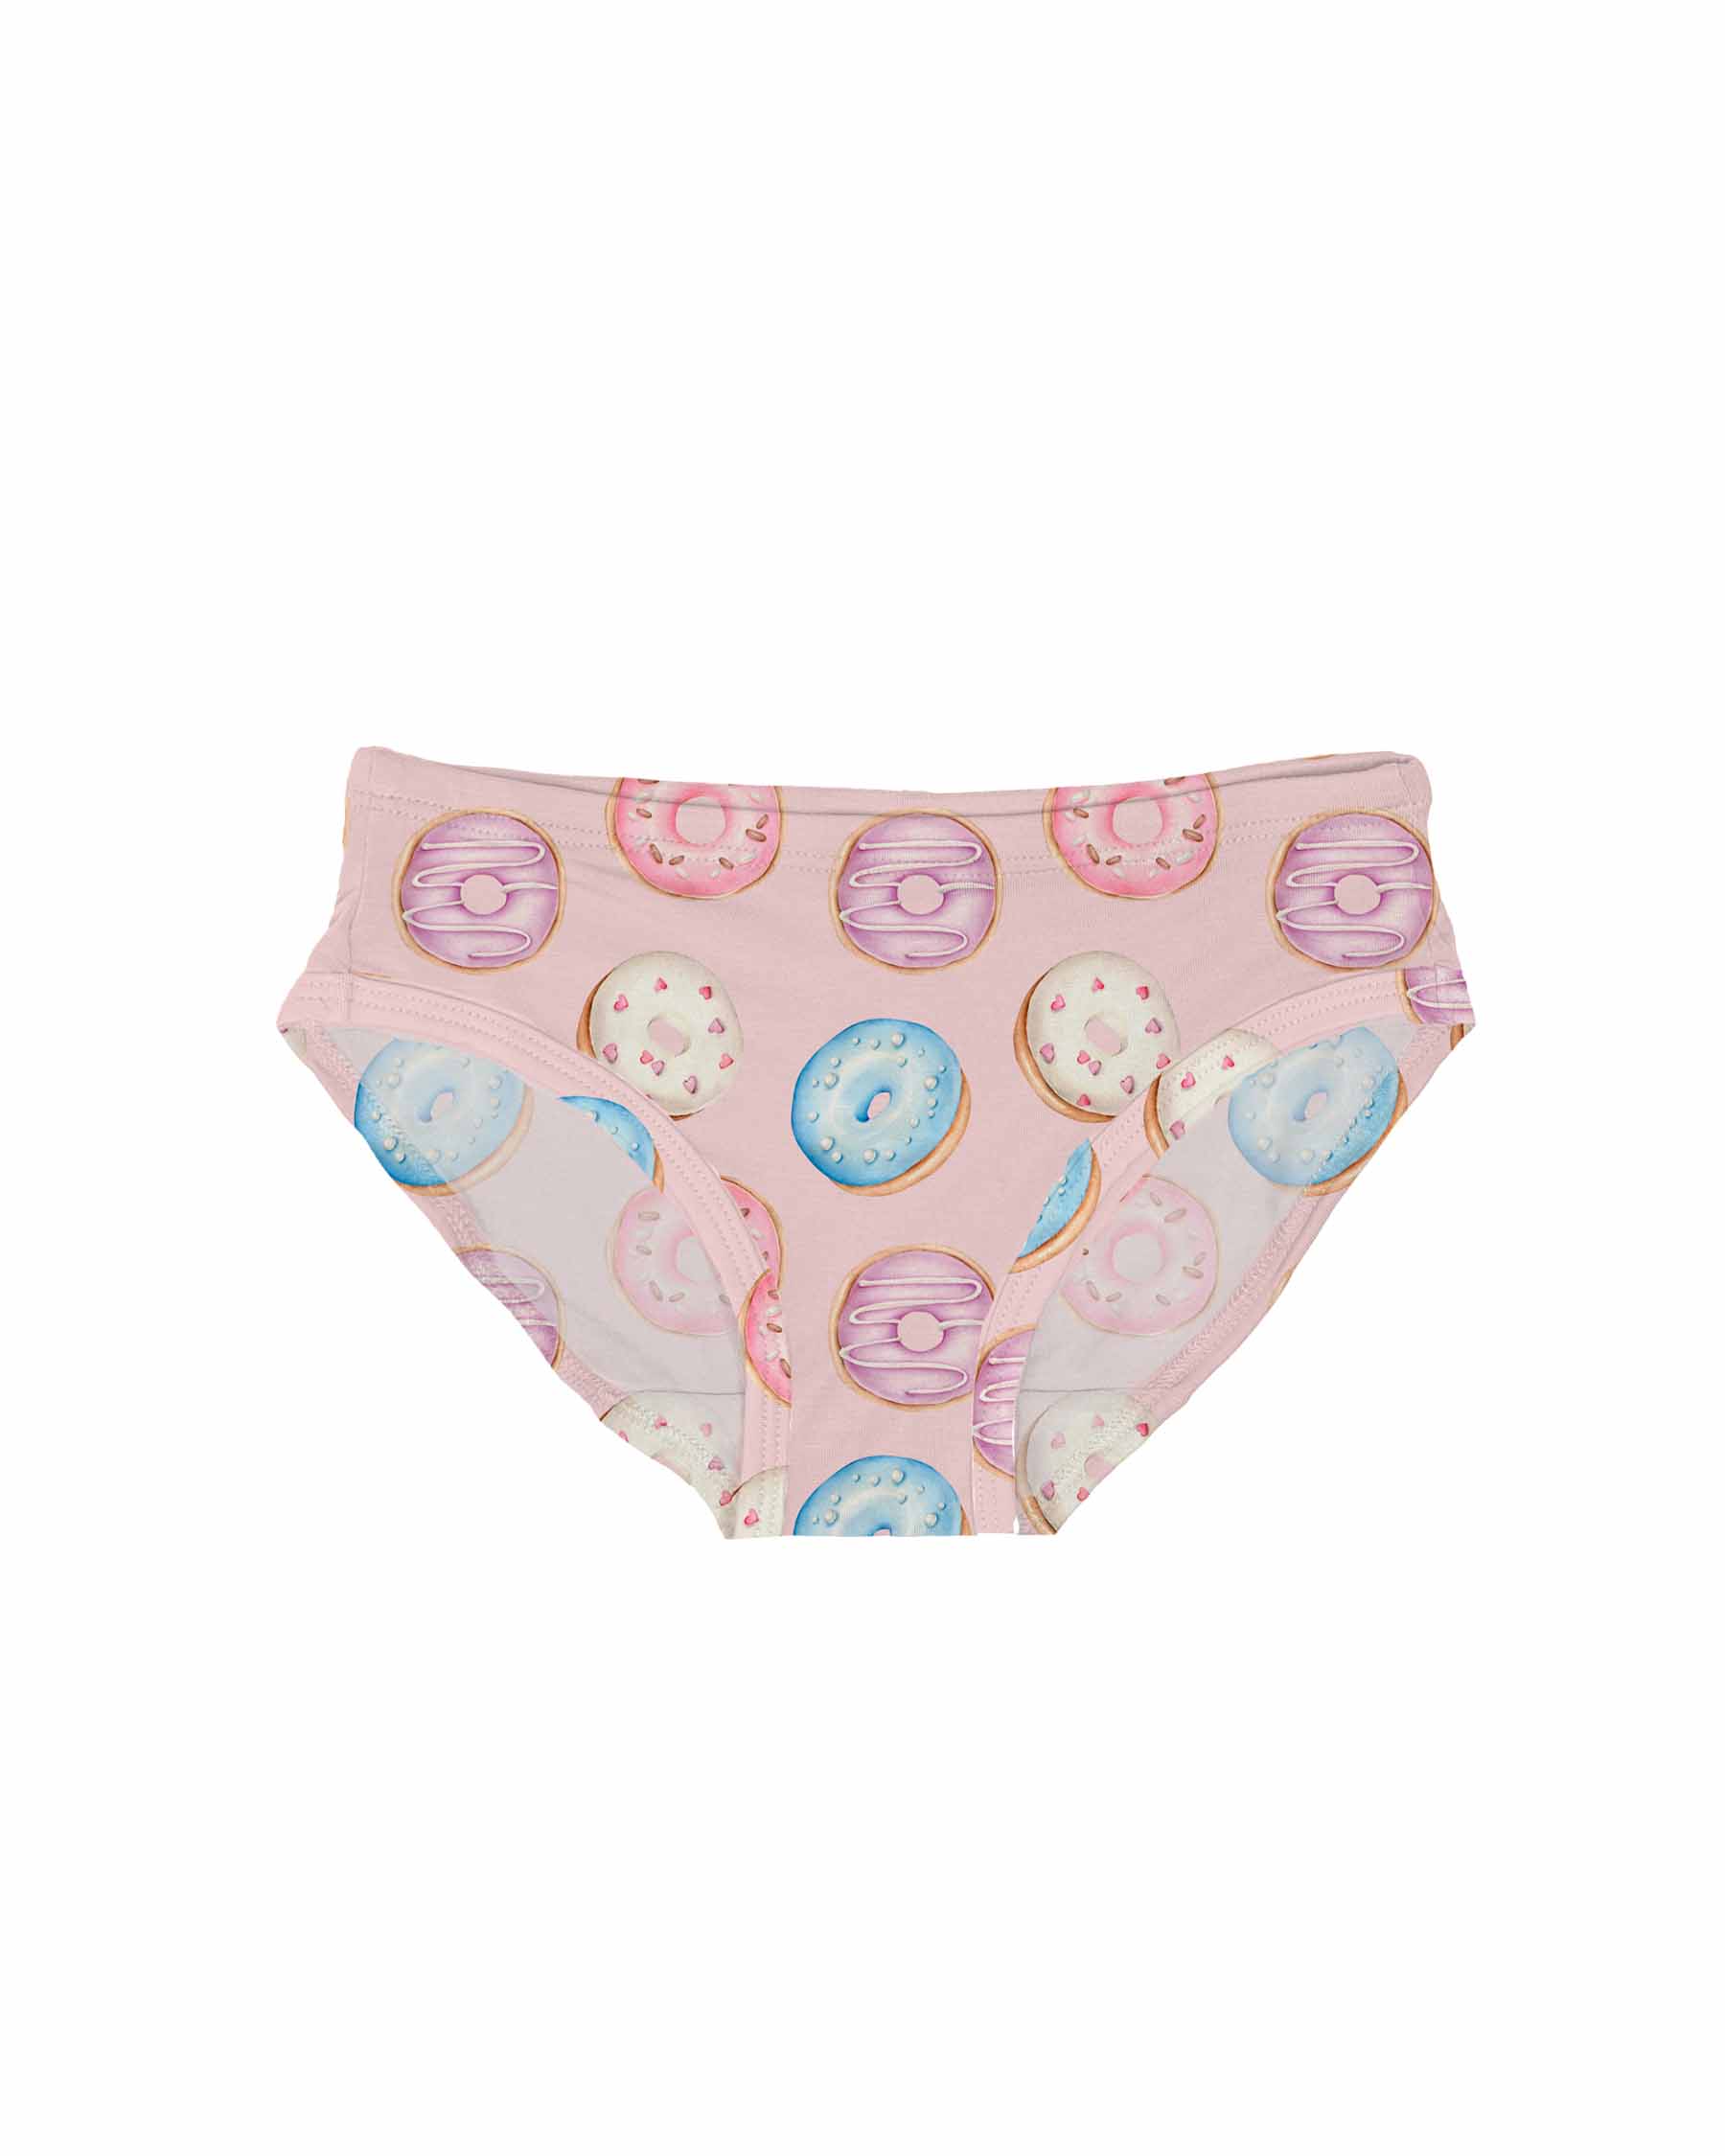  Evelin LEE 6-Pack Baby Girls Underwear Cotton Boyshort